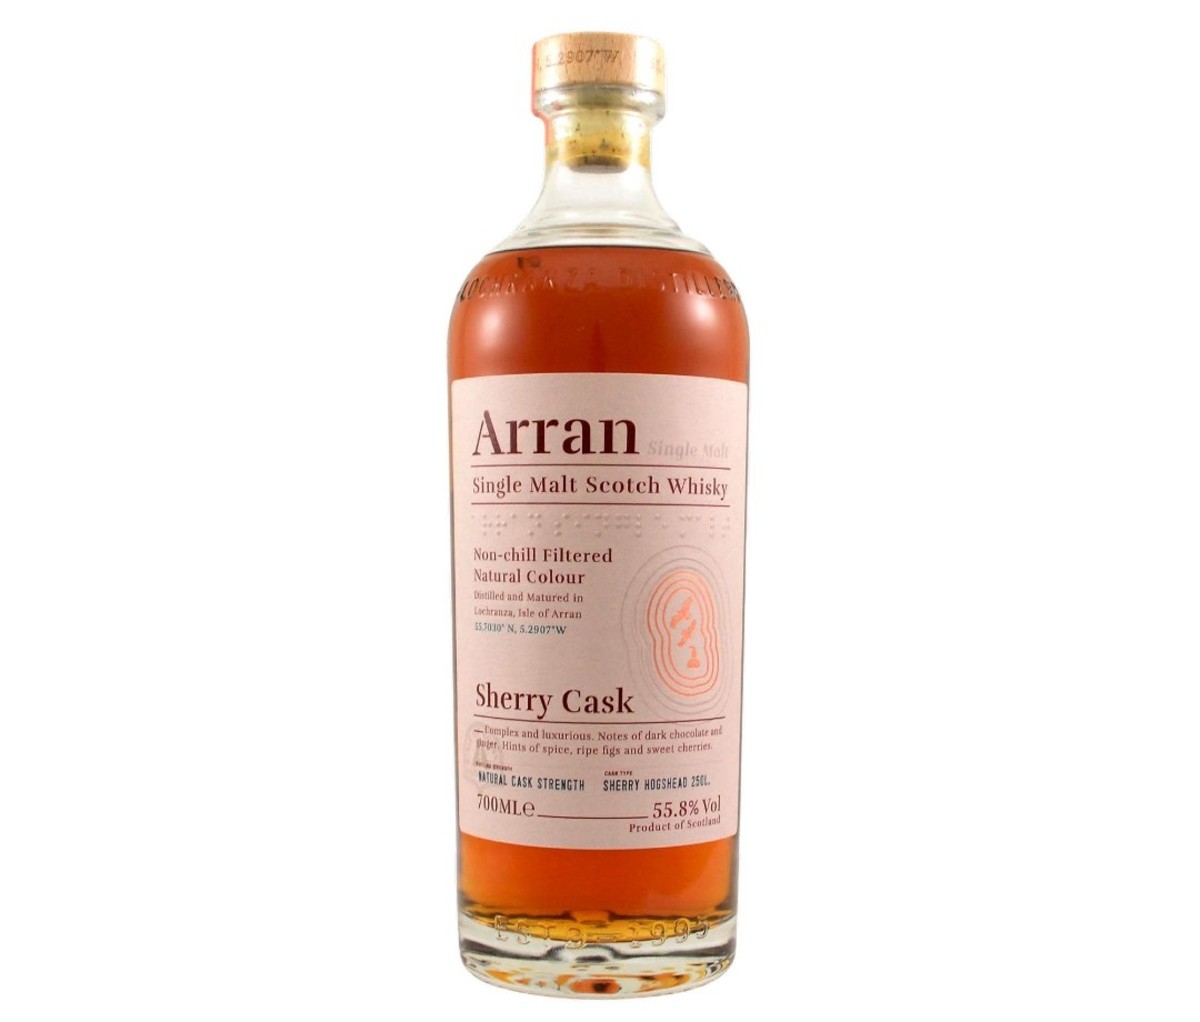 A bottle of Arran Sherry Cask